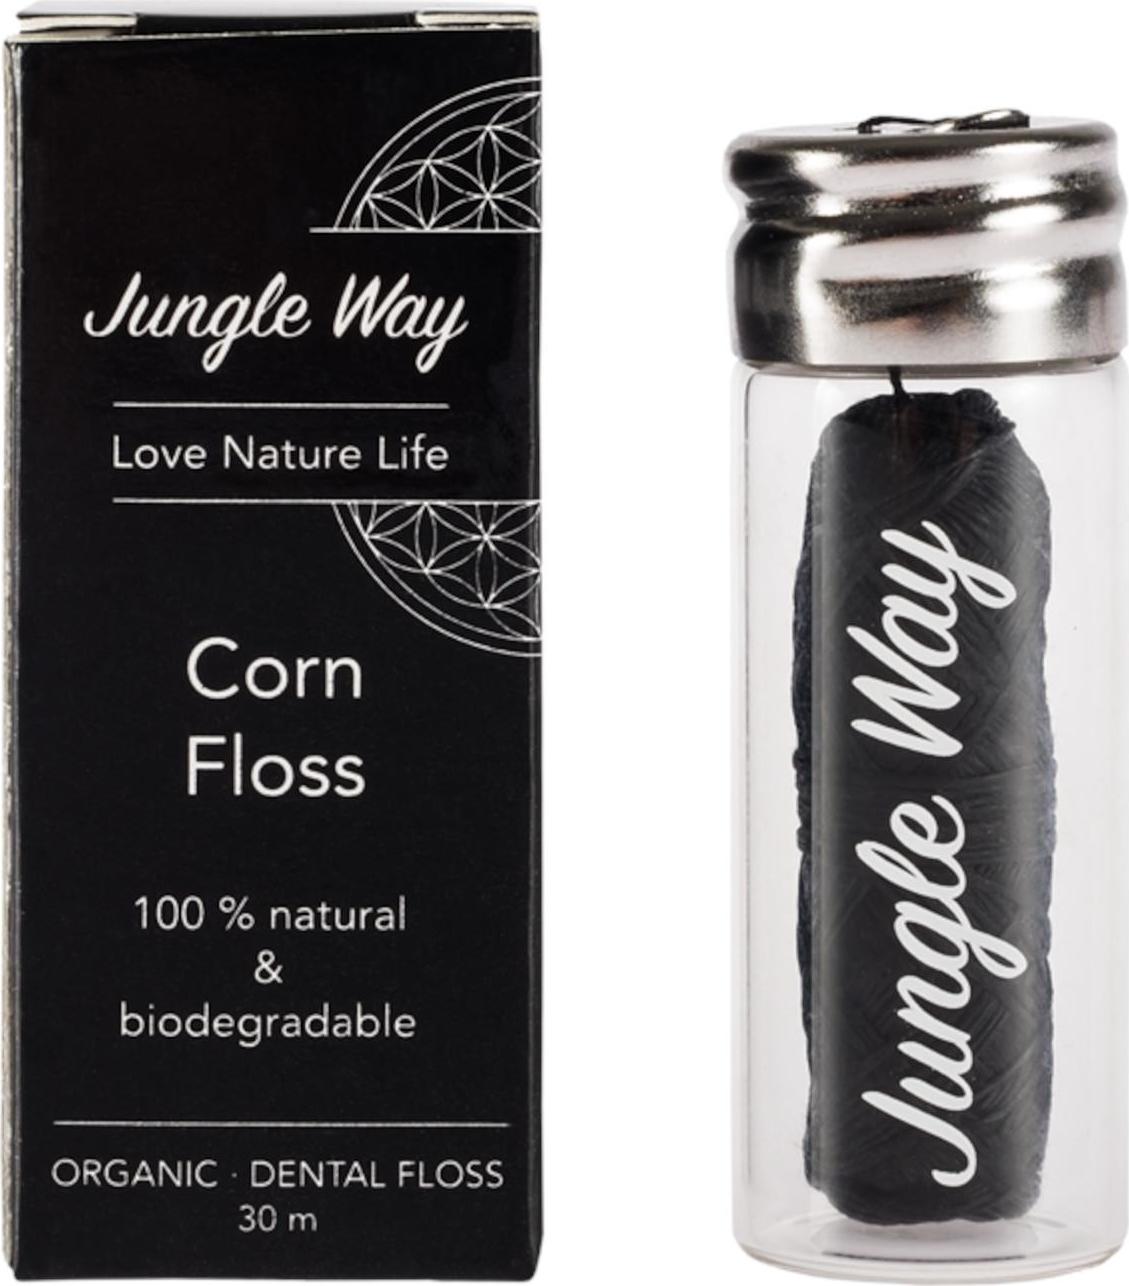 Jungle Way Zubní nit z kukuřičného vlákna se skleněným pouzdrem 18 g